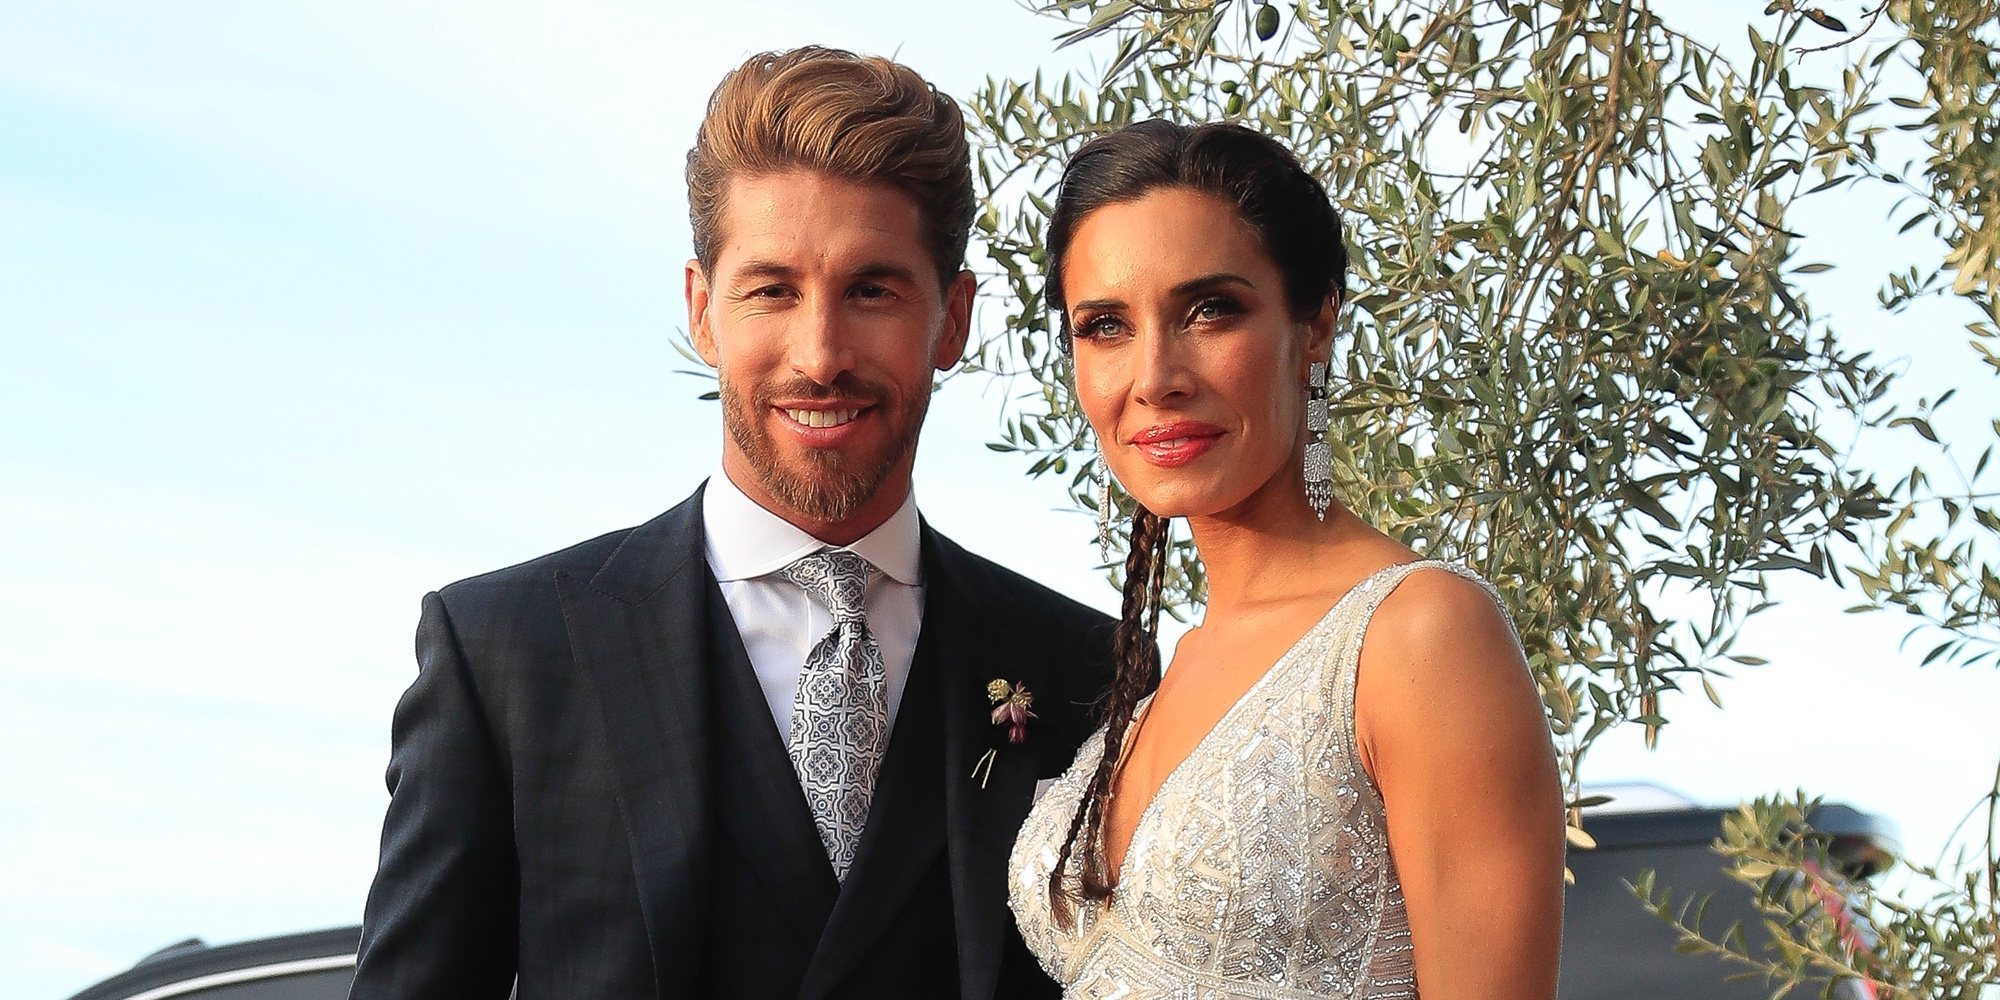 Primeras palabras de Sergio Ramos y Pilar Rubio tras su boda: "El amor es el motor que mueve el mundo"